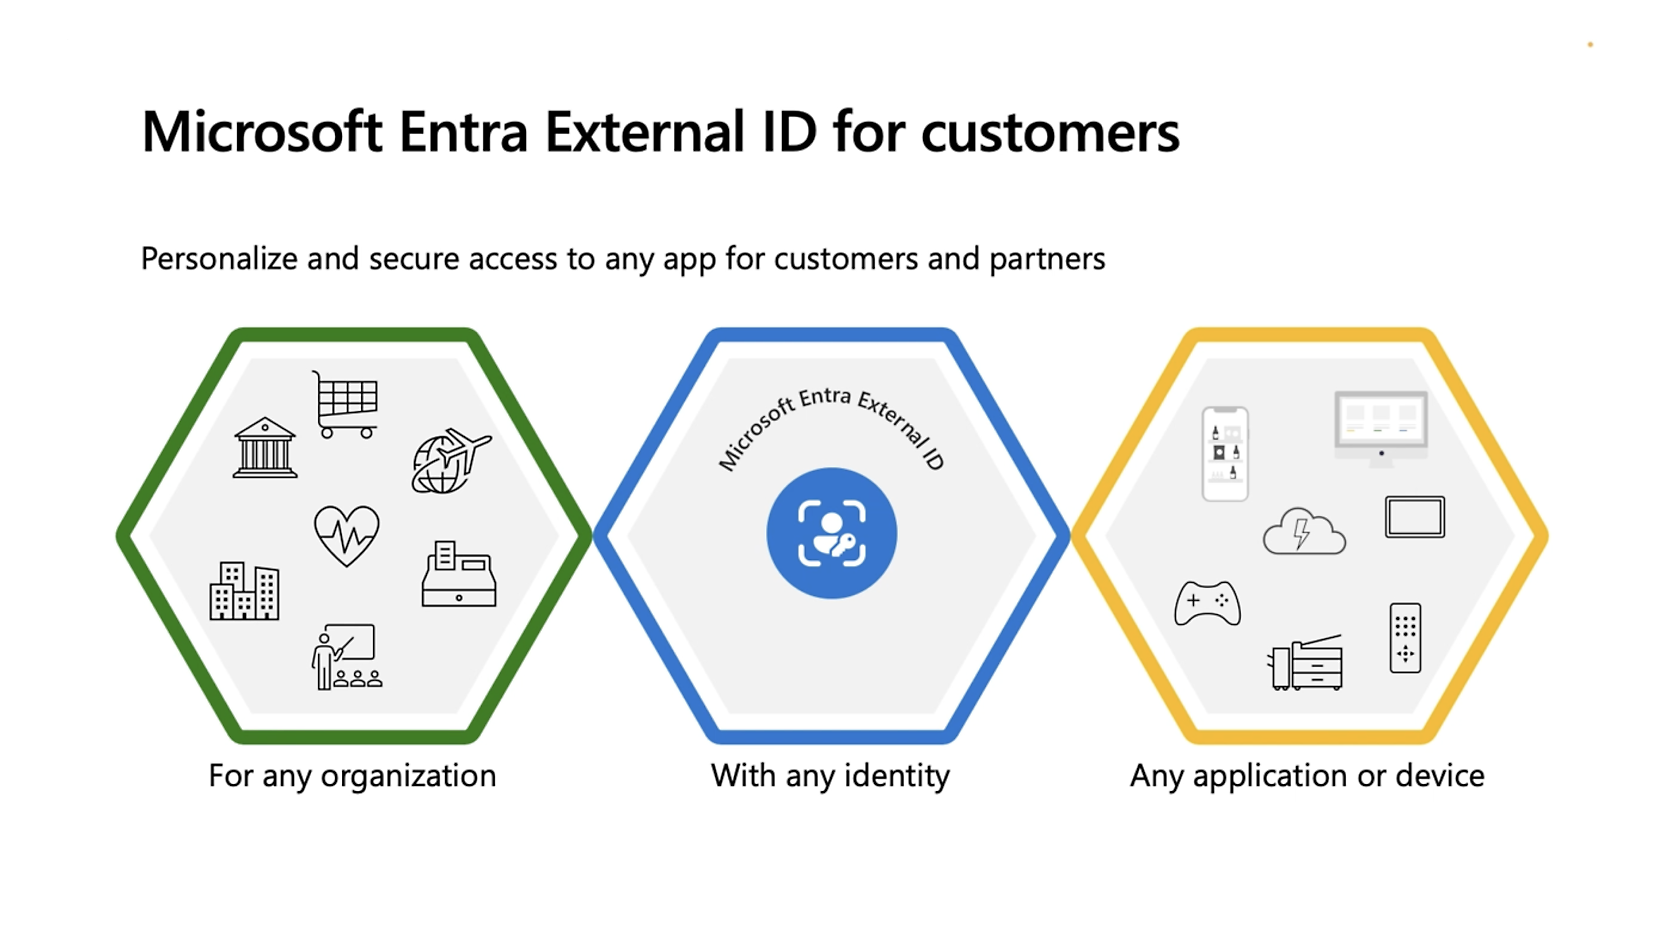 Informacijos diagrama, kurioje rodomos „Microsoft Entra“ išorinio ID funkcijos: trys šešiakampiai pažymėti